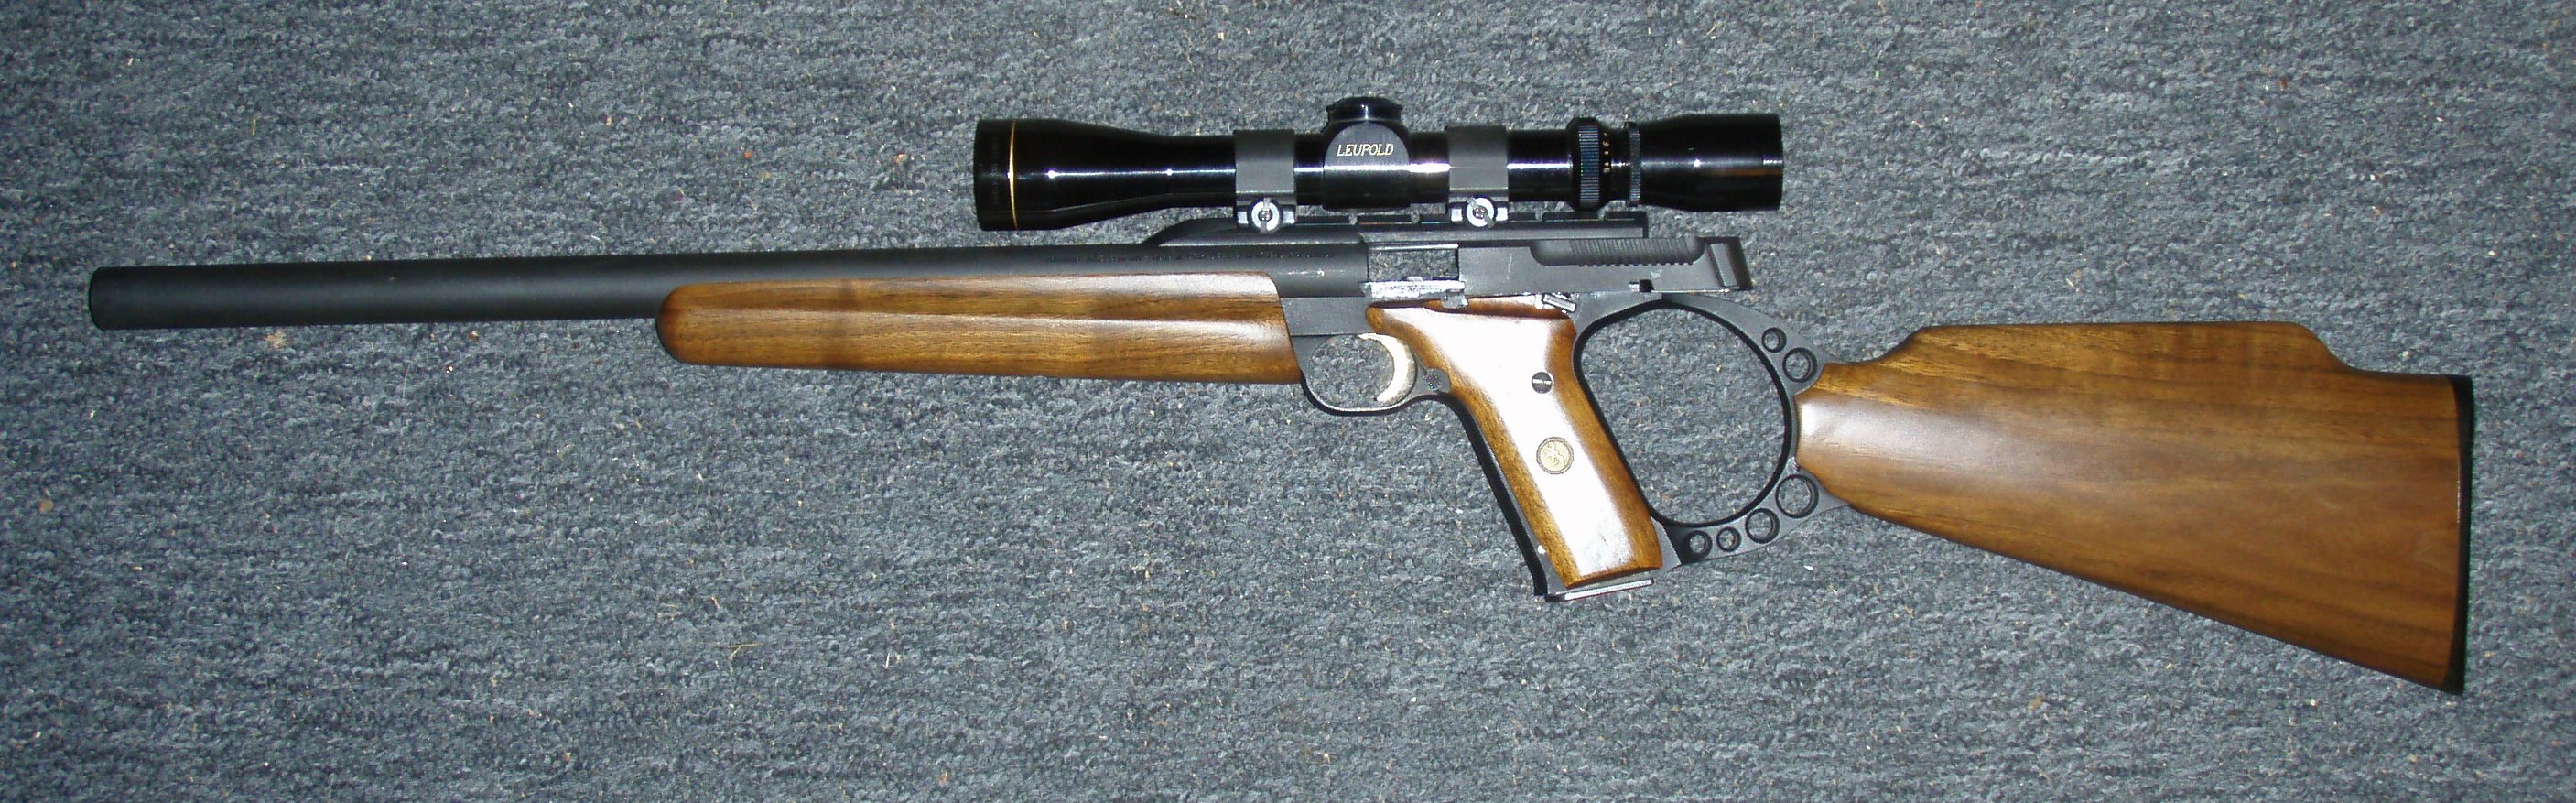 Target 22 Rifle